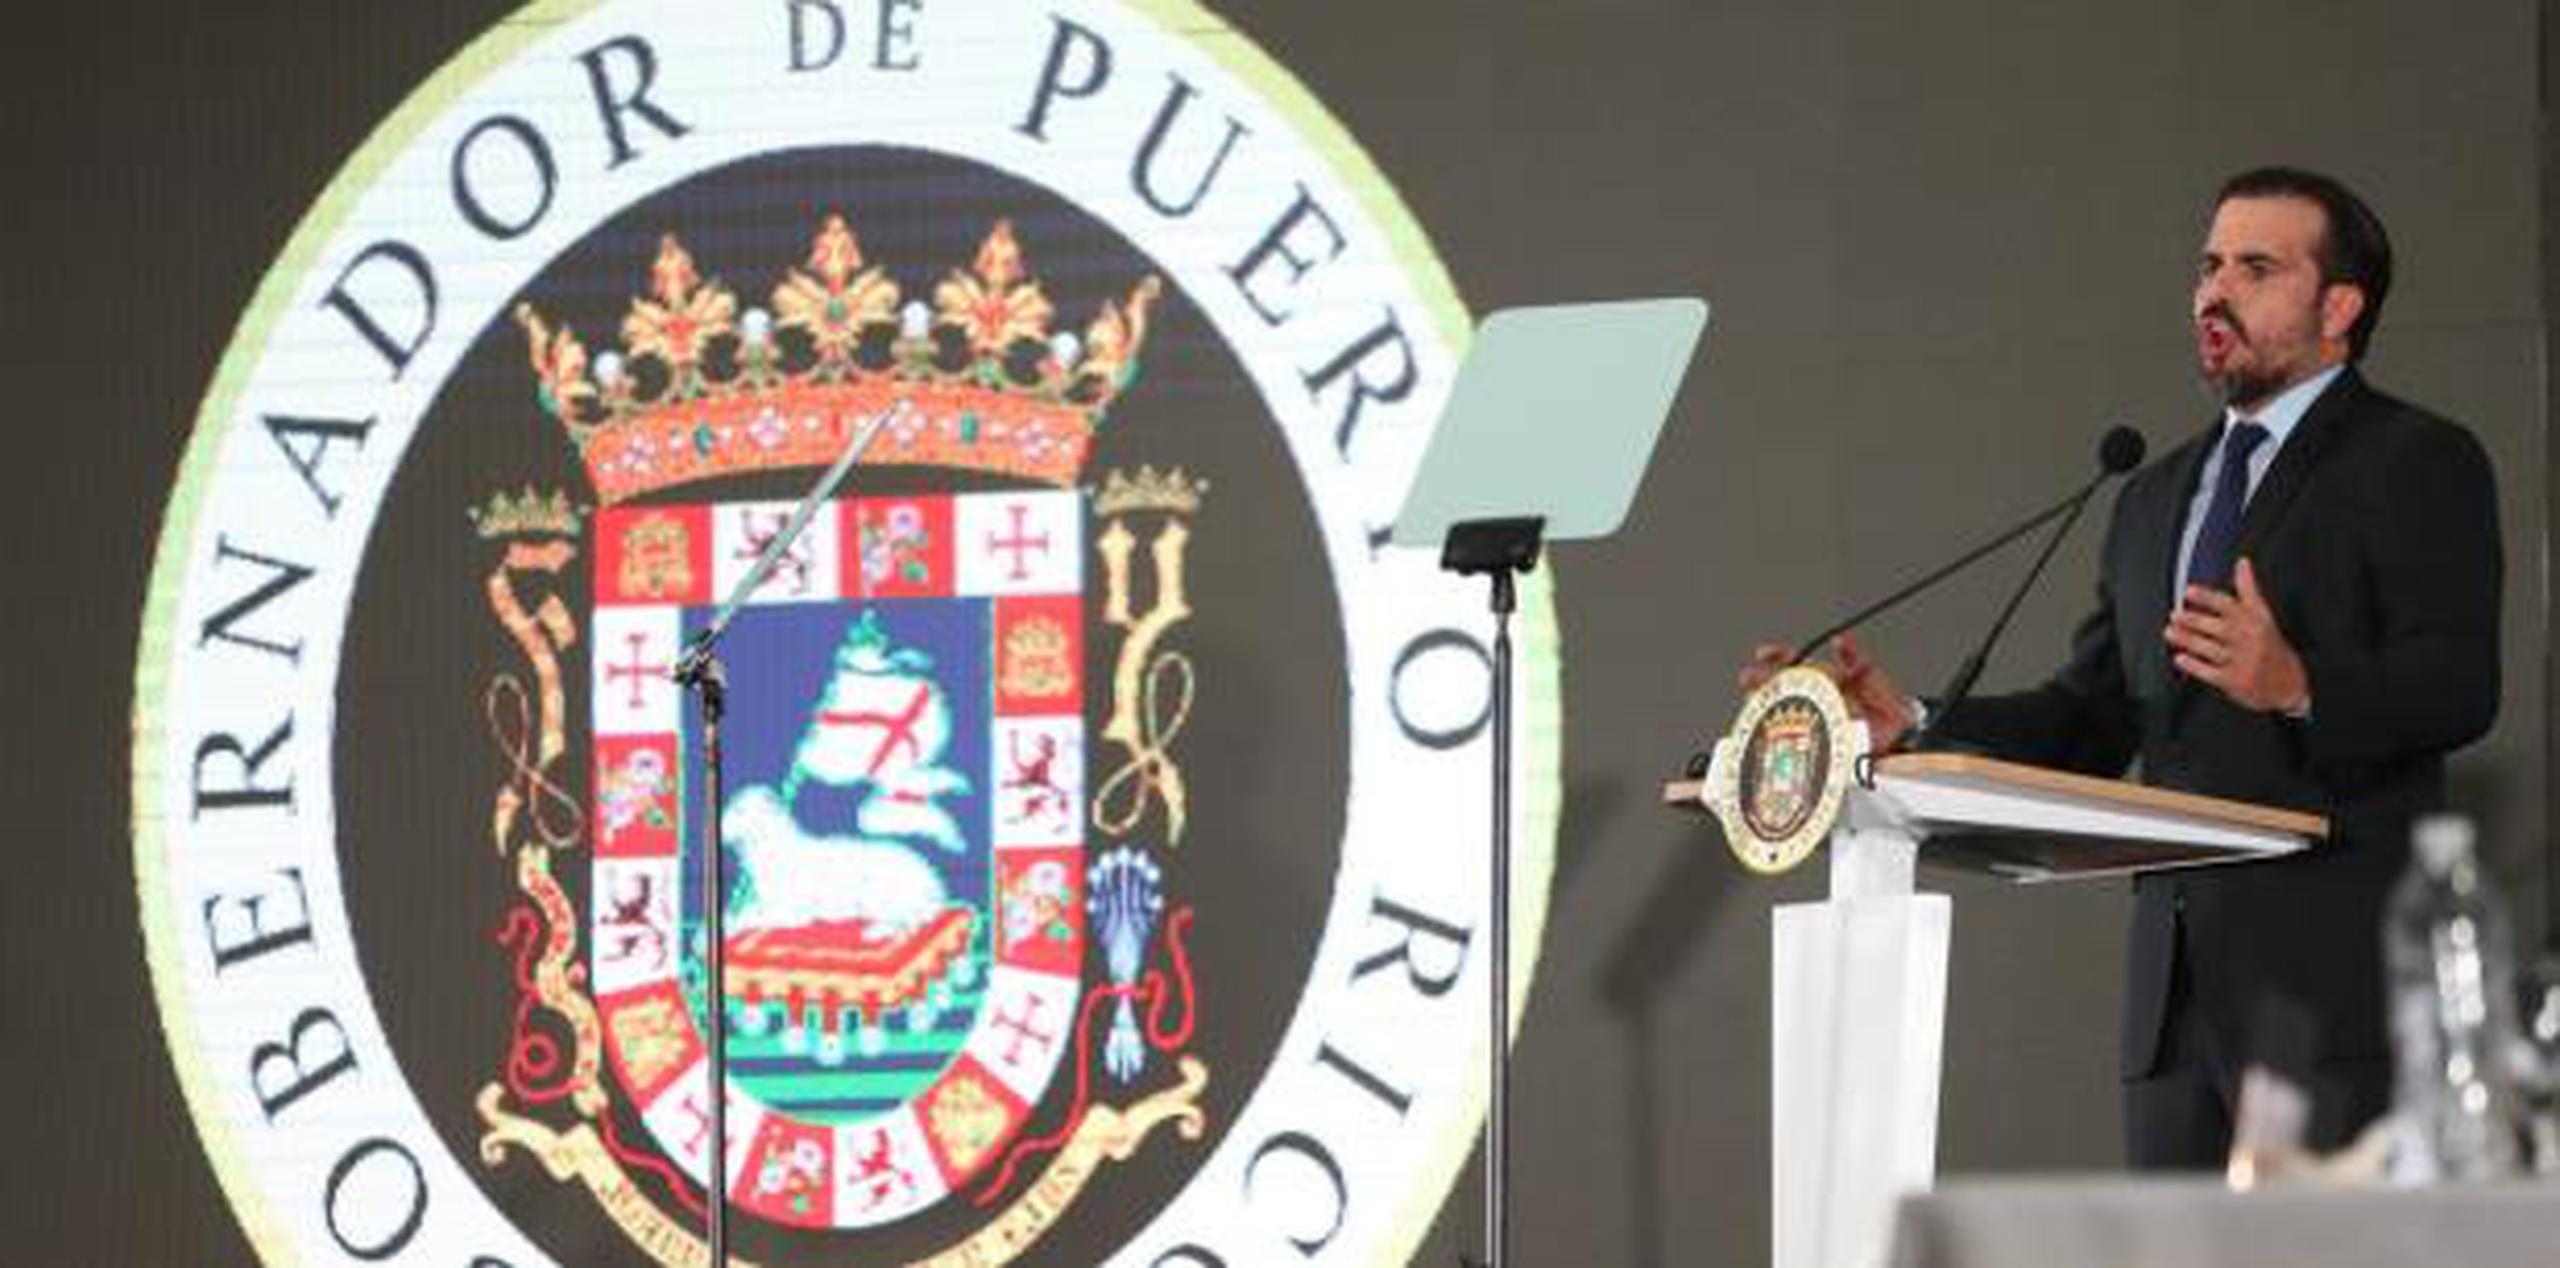 El mensaje del gobernador se celebró el pasado domingo en Ponce. (archivo)